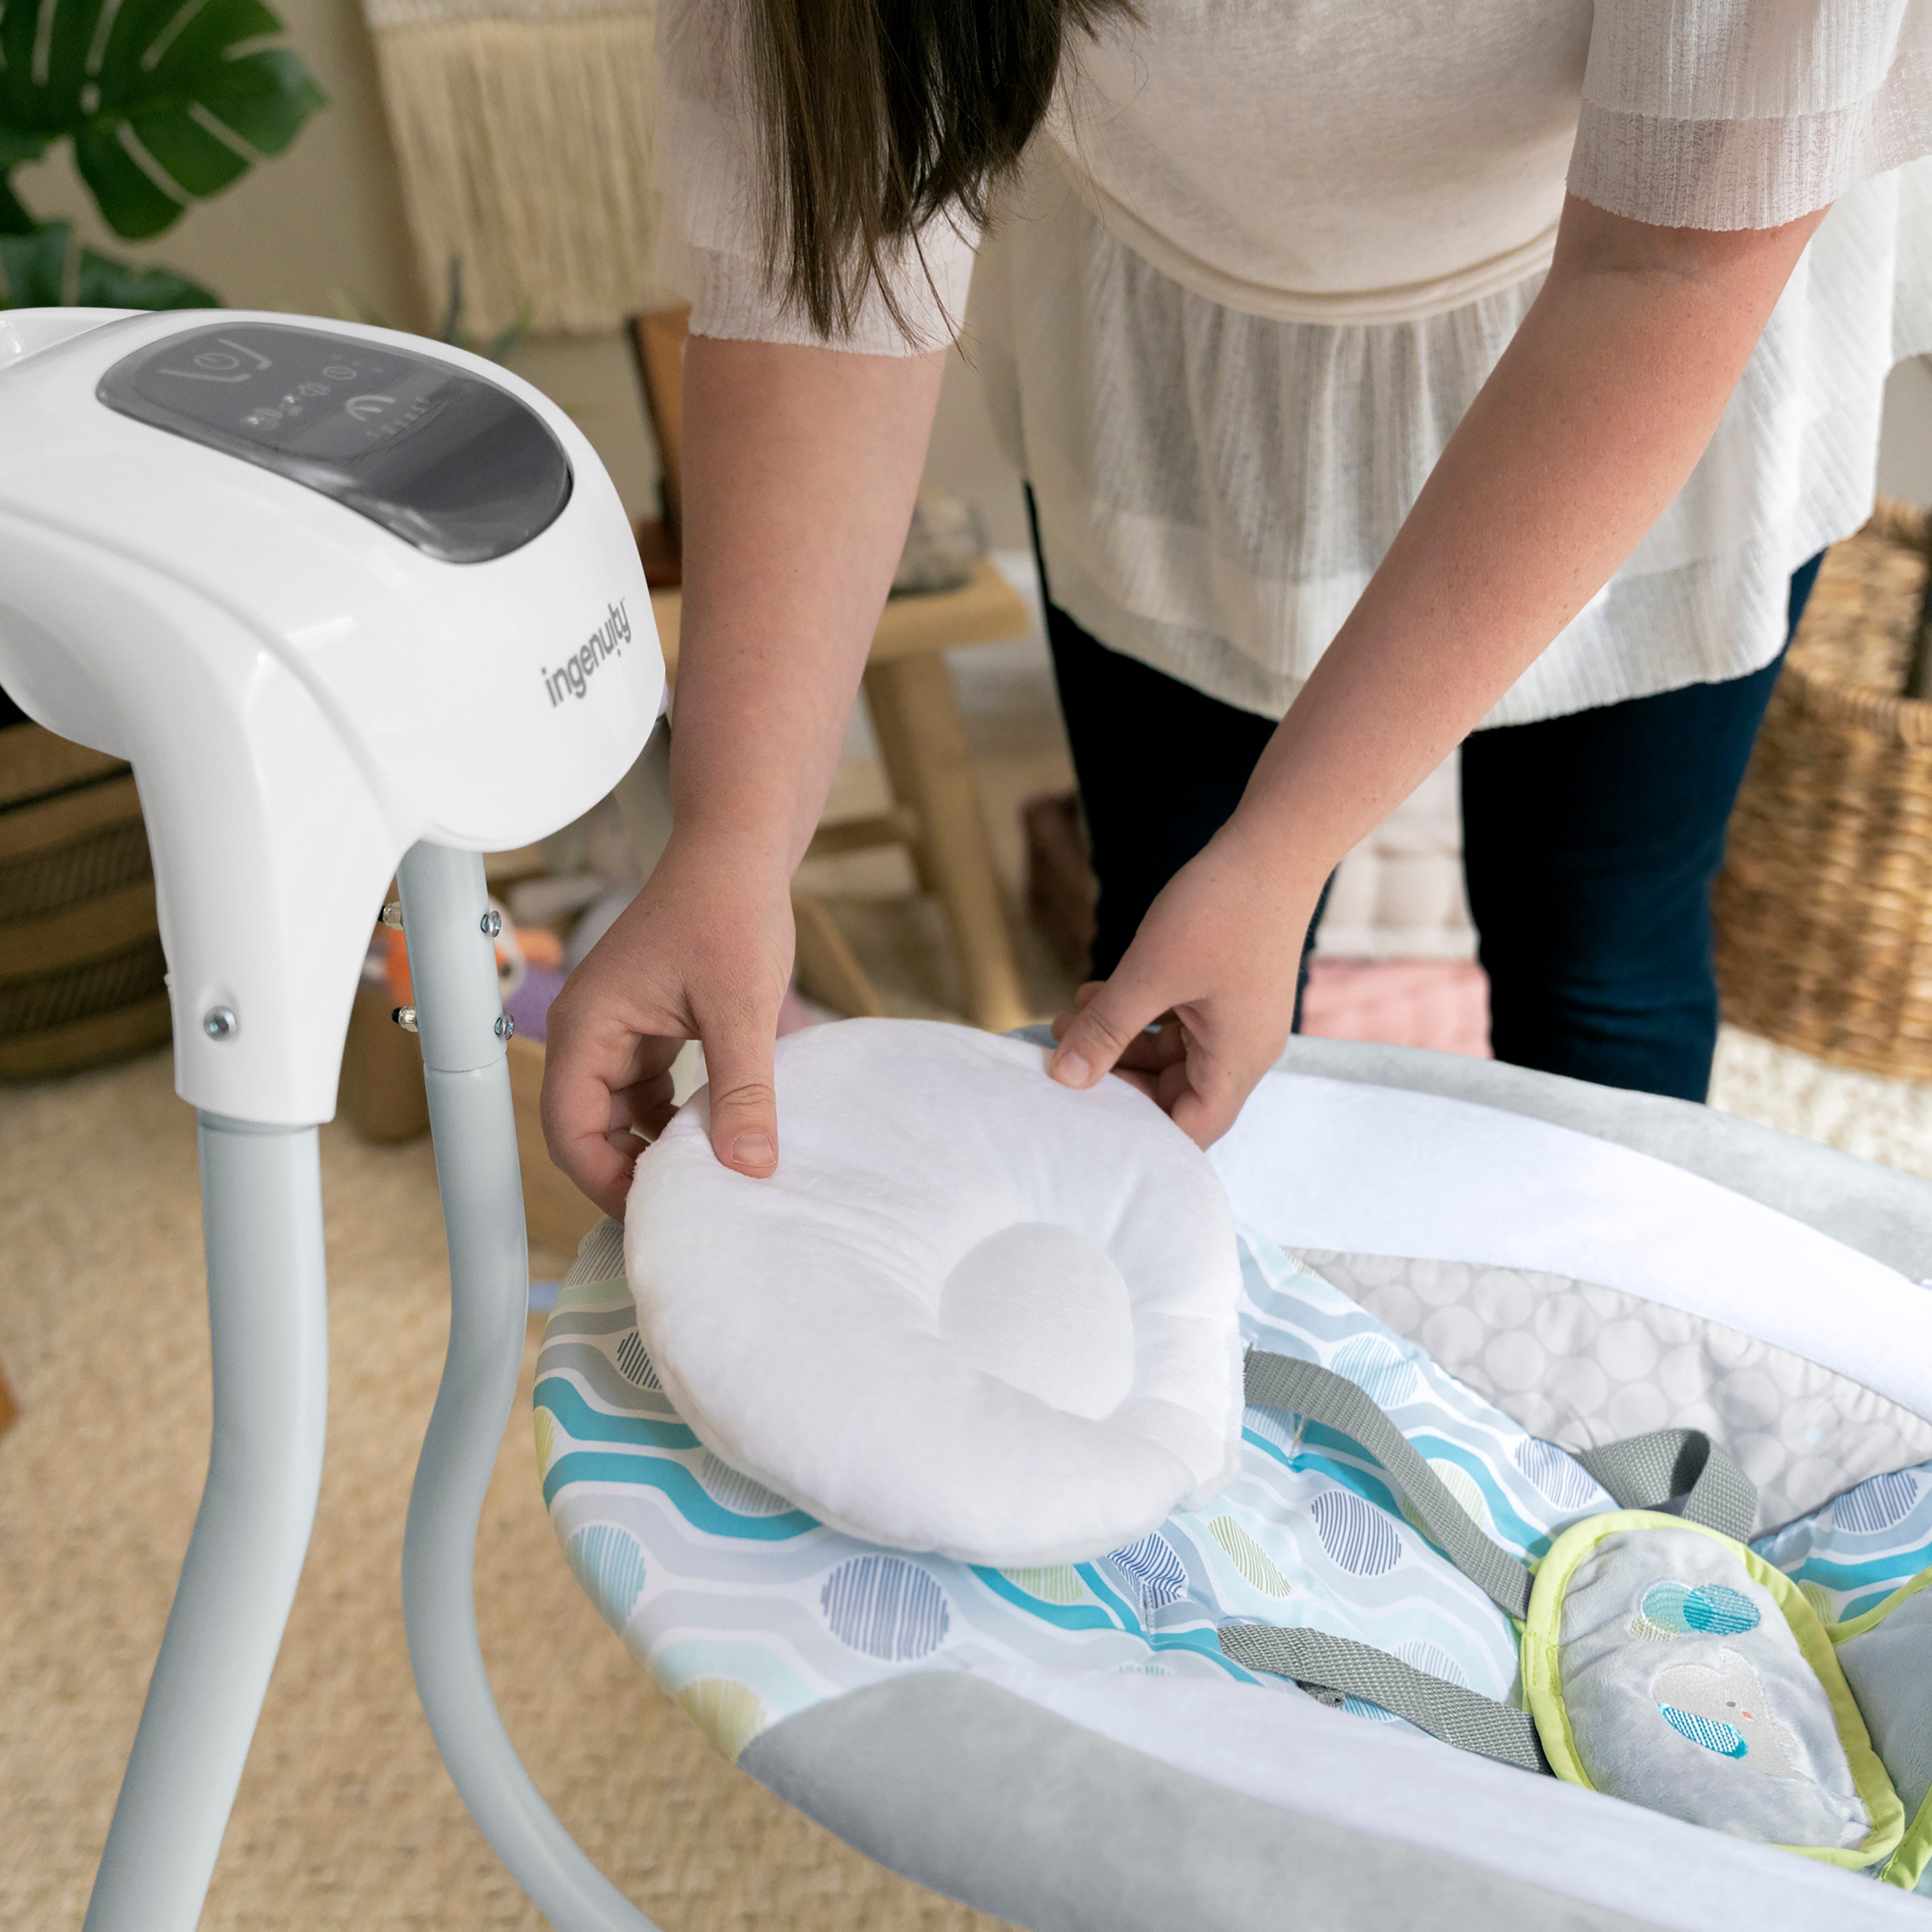 Ingenuity SimpleComfort Balançoire électrique apaisante pour bébé Everston  